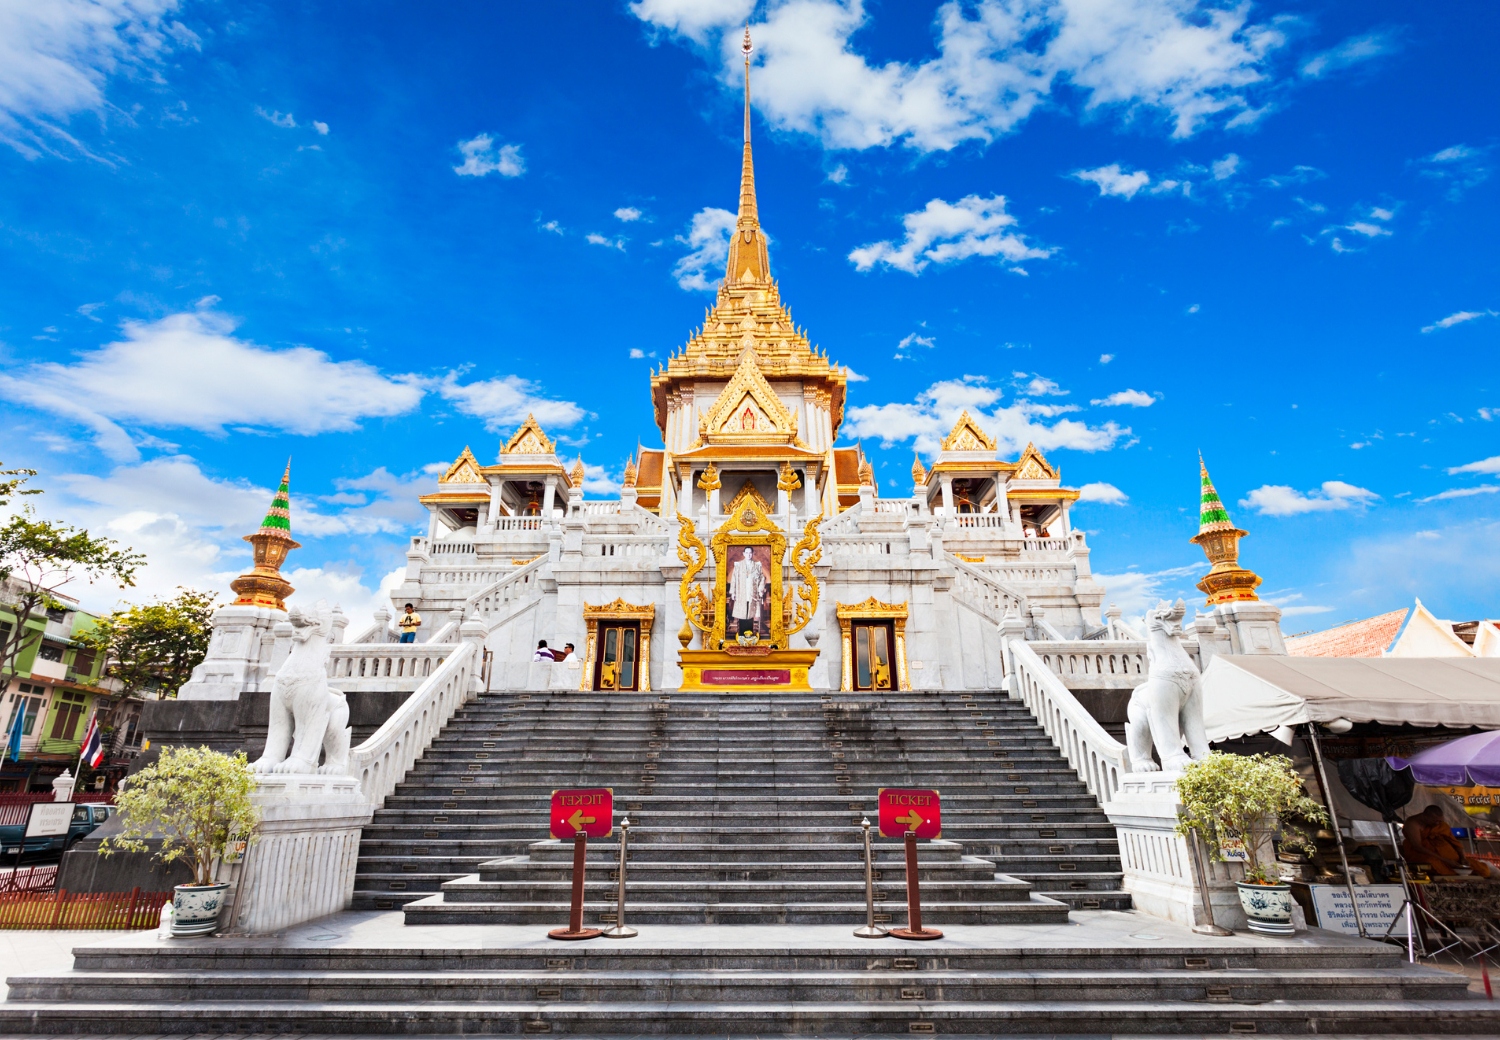 מקדש הבודהה המוזהב - Temple of the Golden Buddha - Wat Traimit